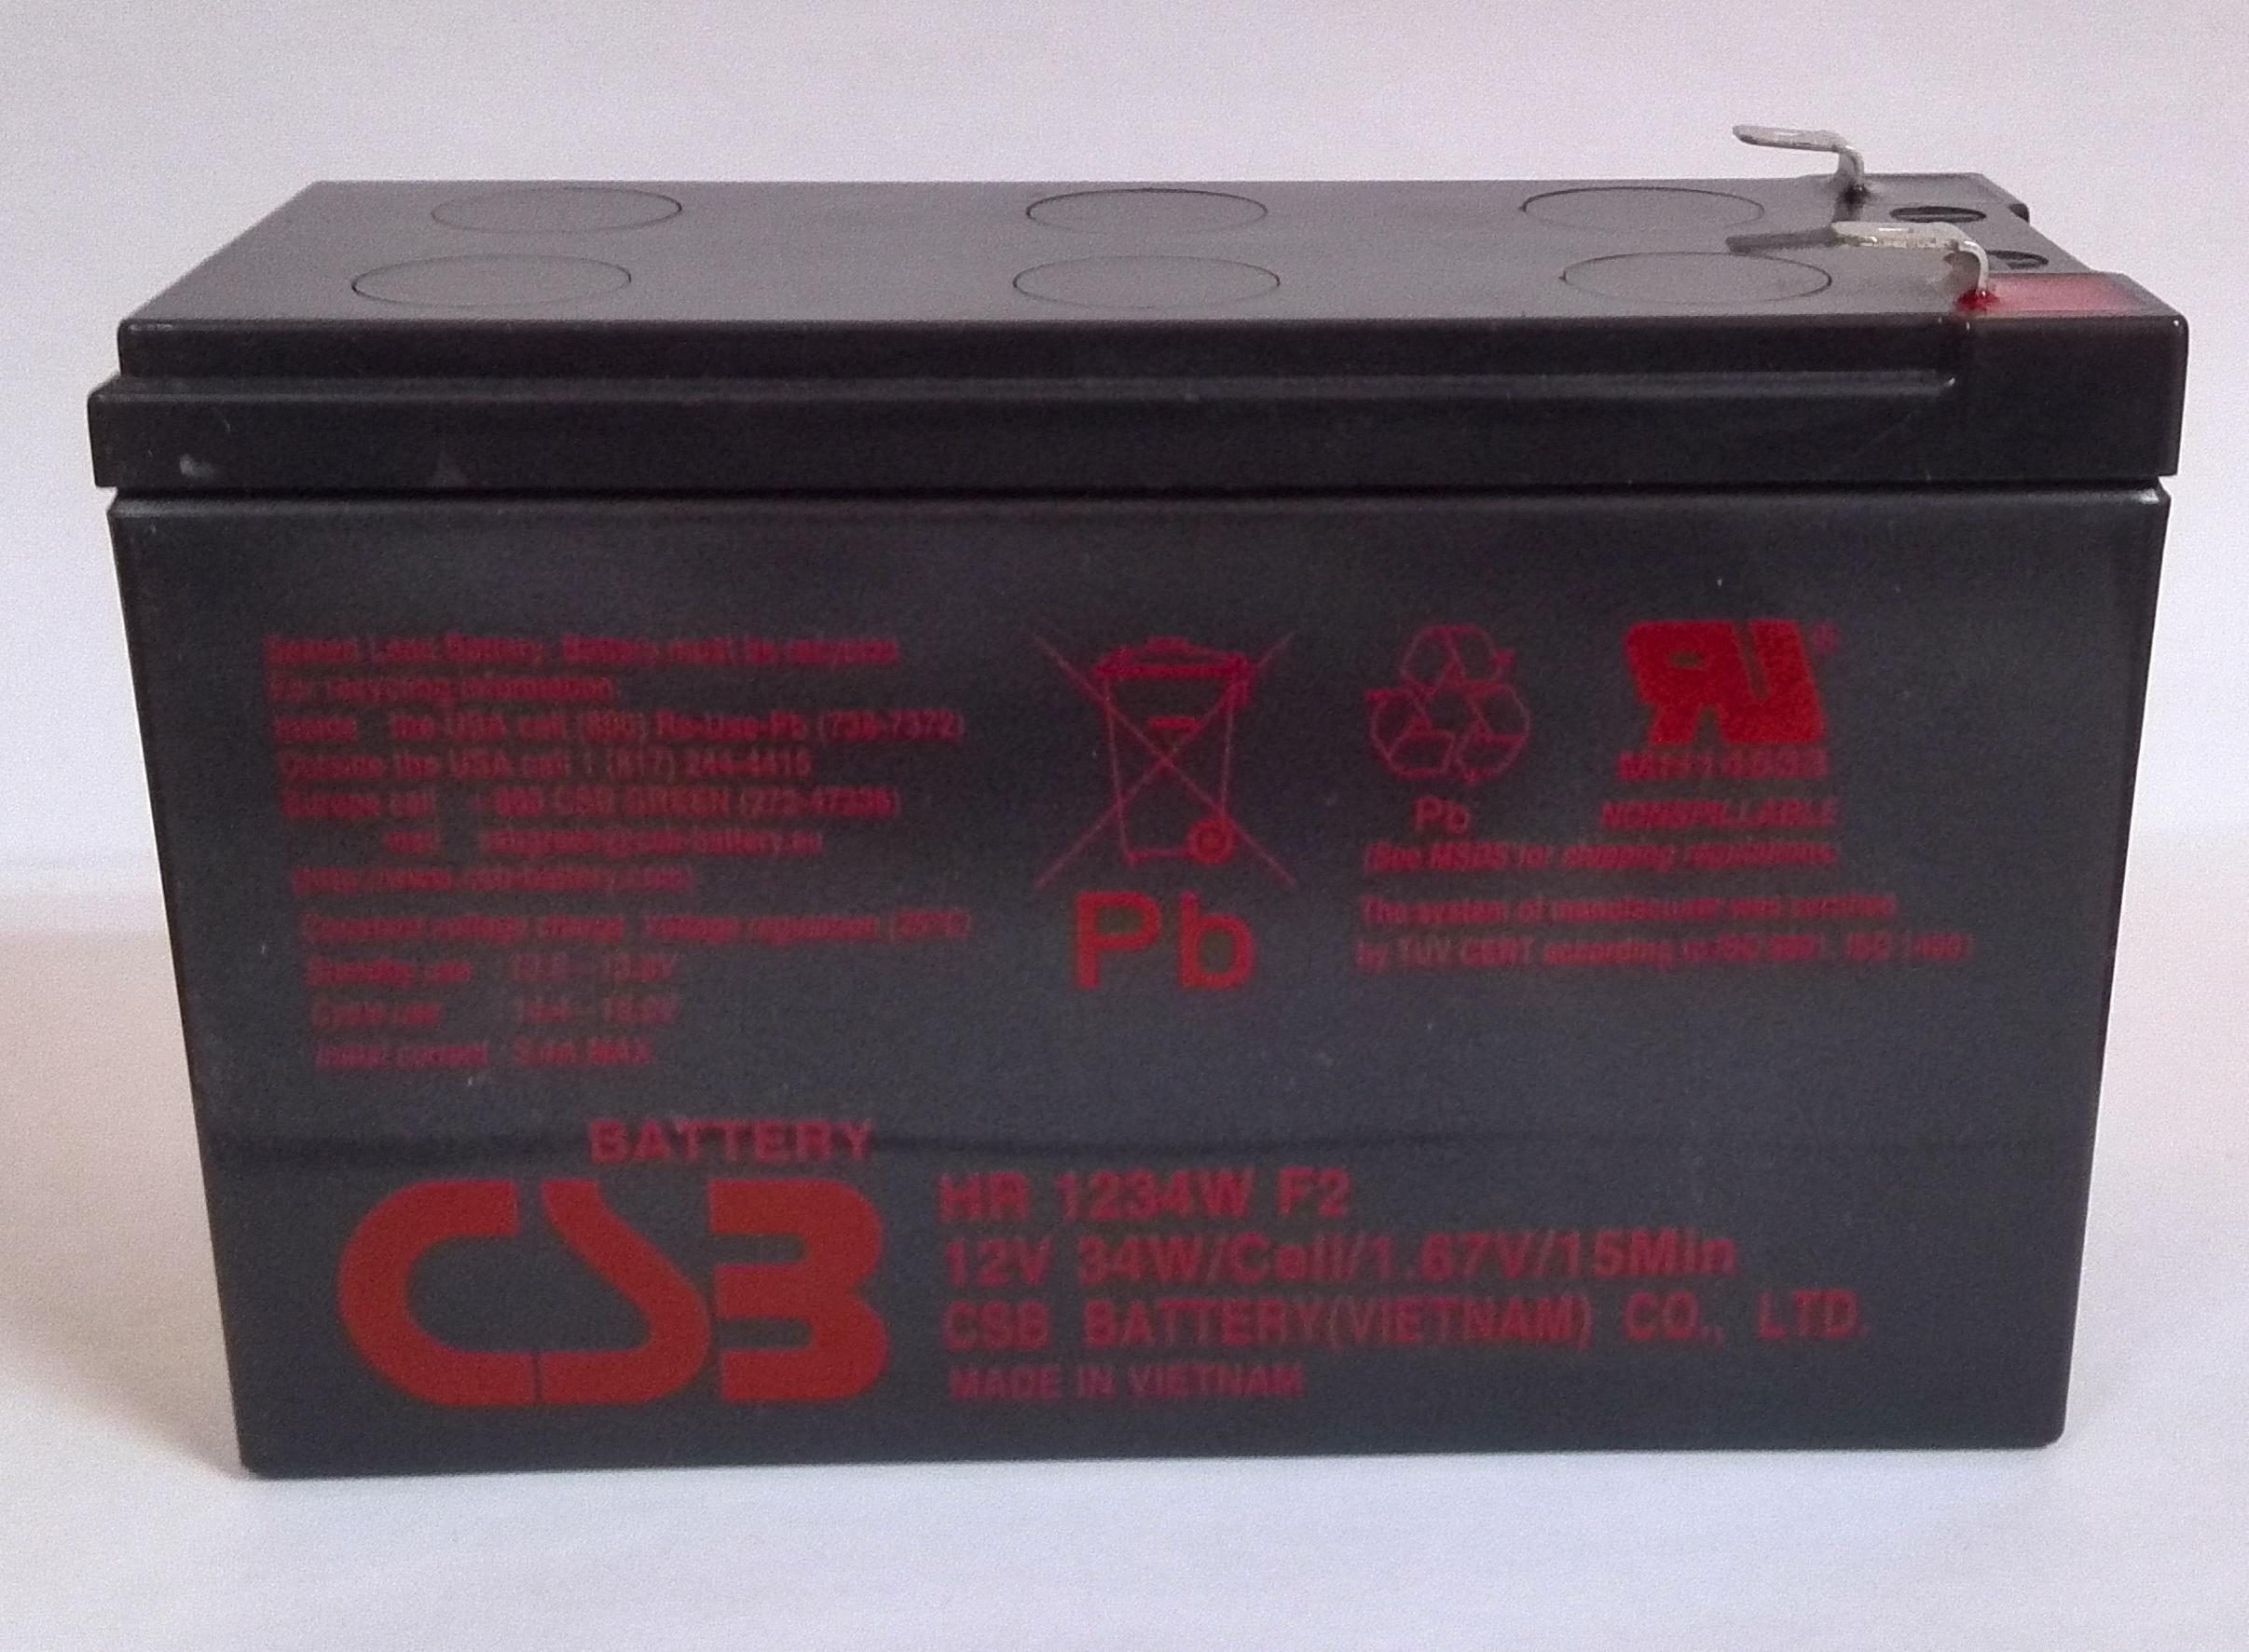 Аккумулятор csb hr1234w. Аккумуляторная батарея CSB HR 1234w. CSB батарея hr1234w 12в 9ач. CSB HR 1234w 9 а·ч. Батарея аккумуляторная CSB hr1234w f2 2в 9.0а*ч.